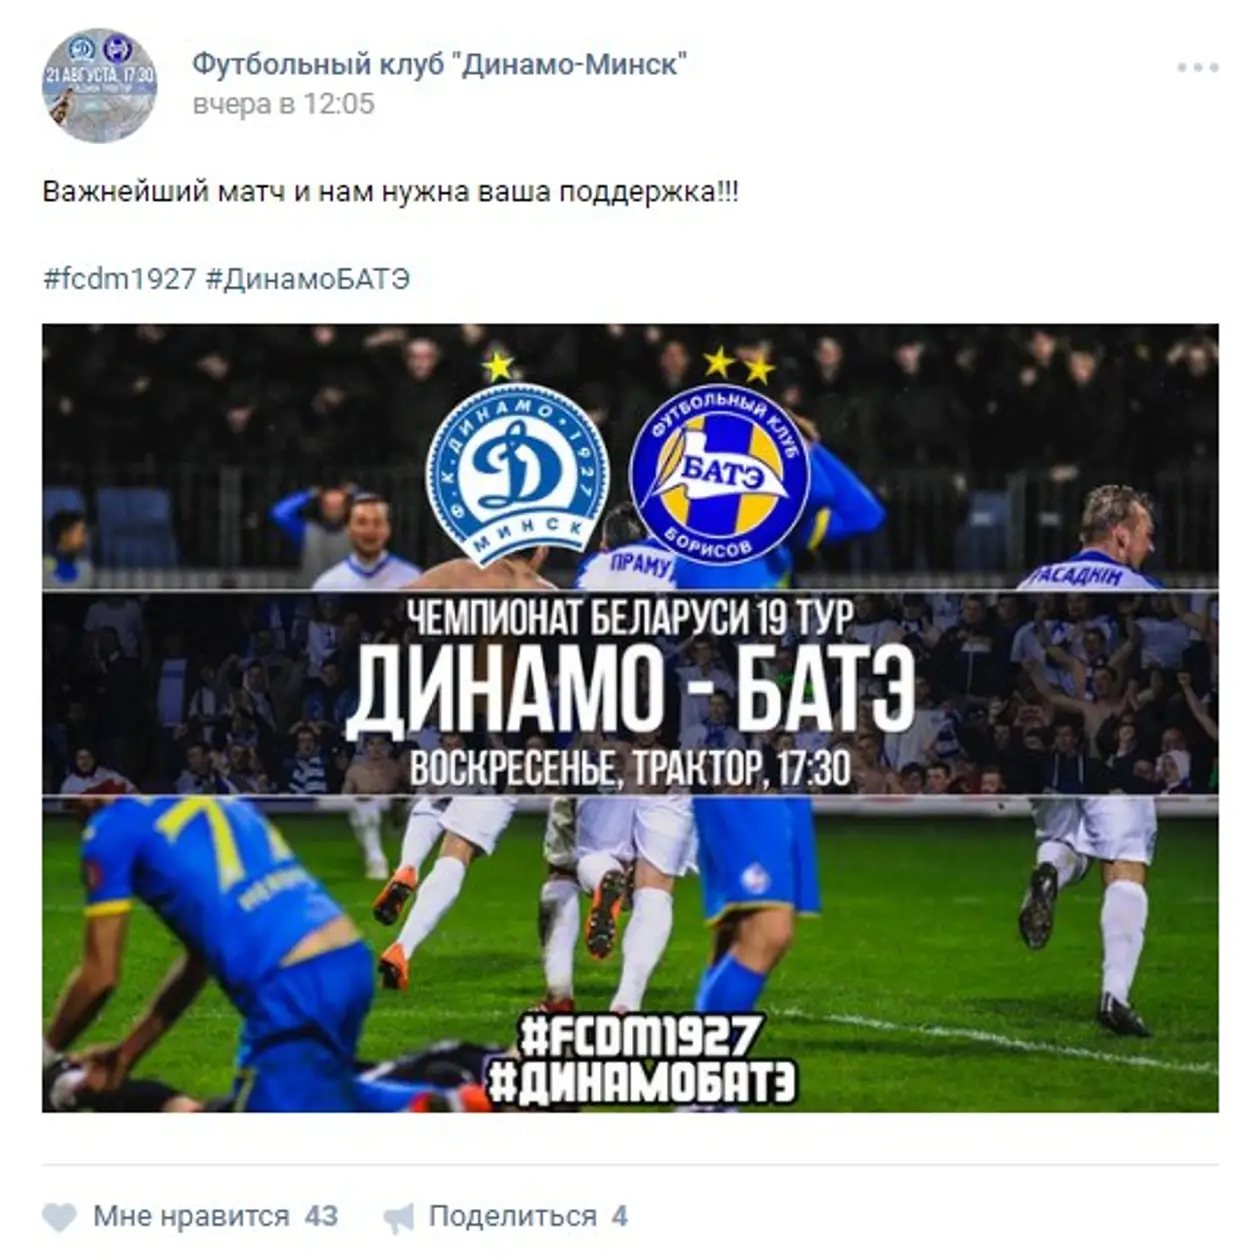 Как клубы высшей лиги анонсируют матчи в своих группах ВКонтакте